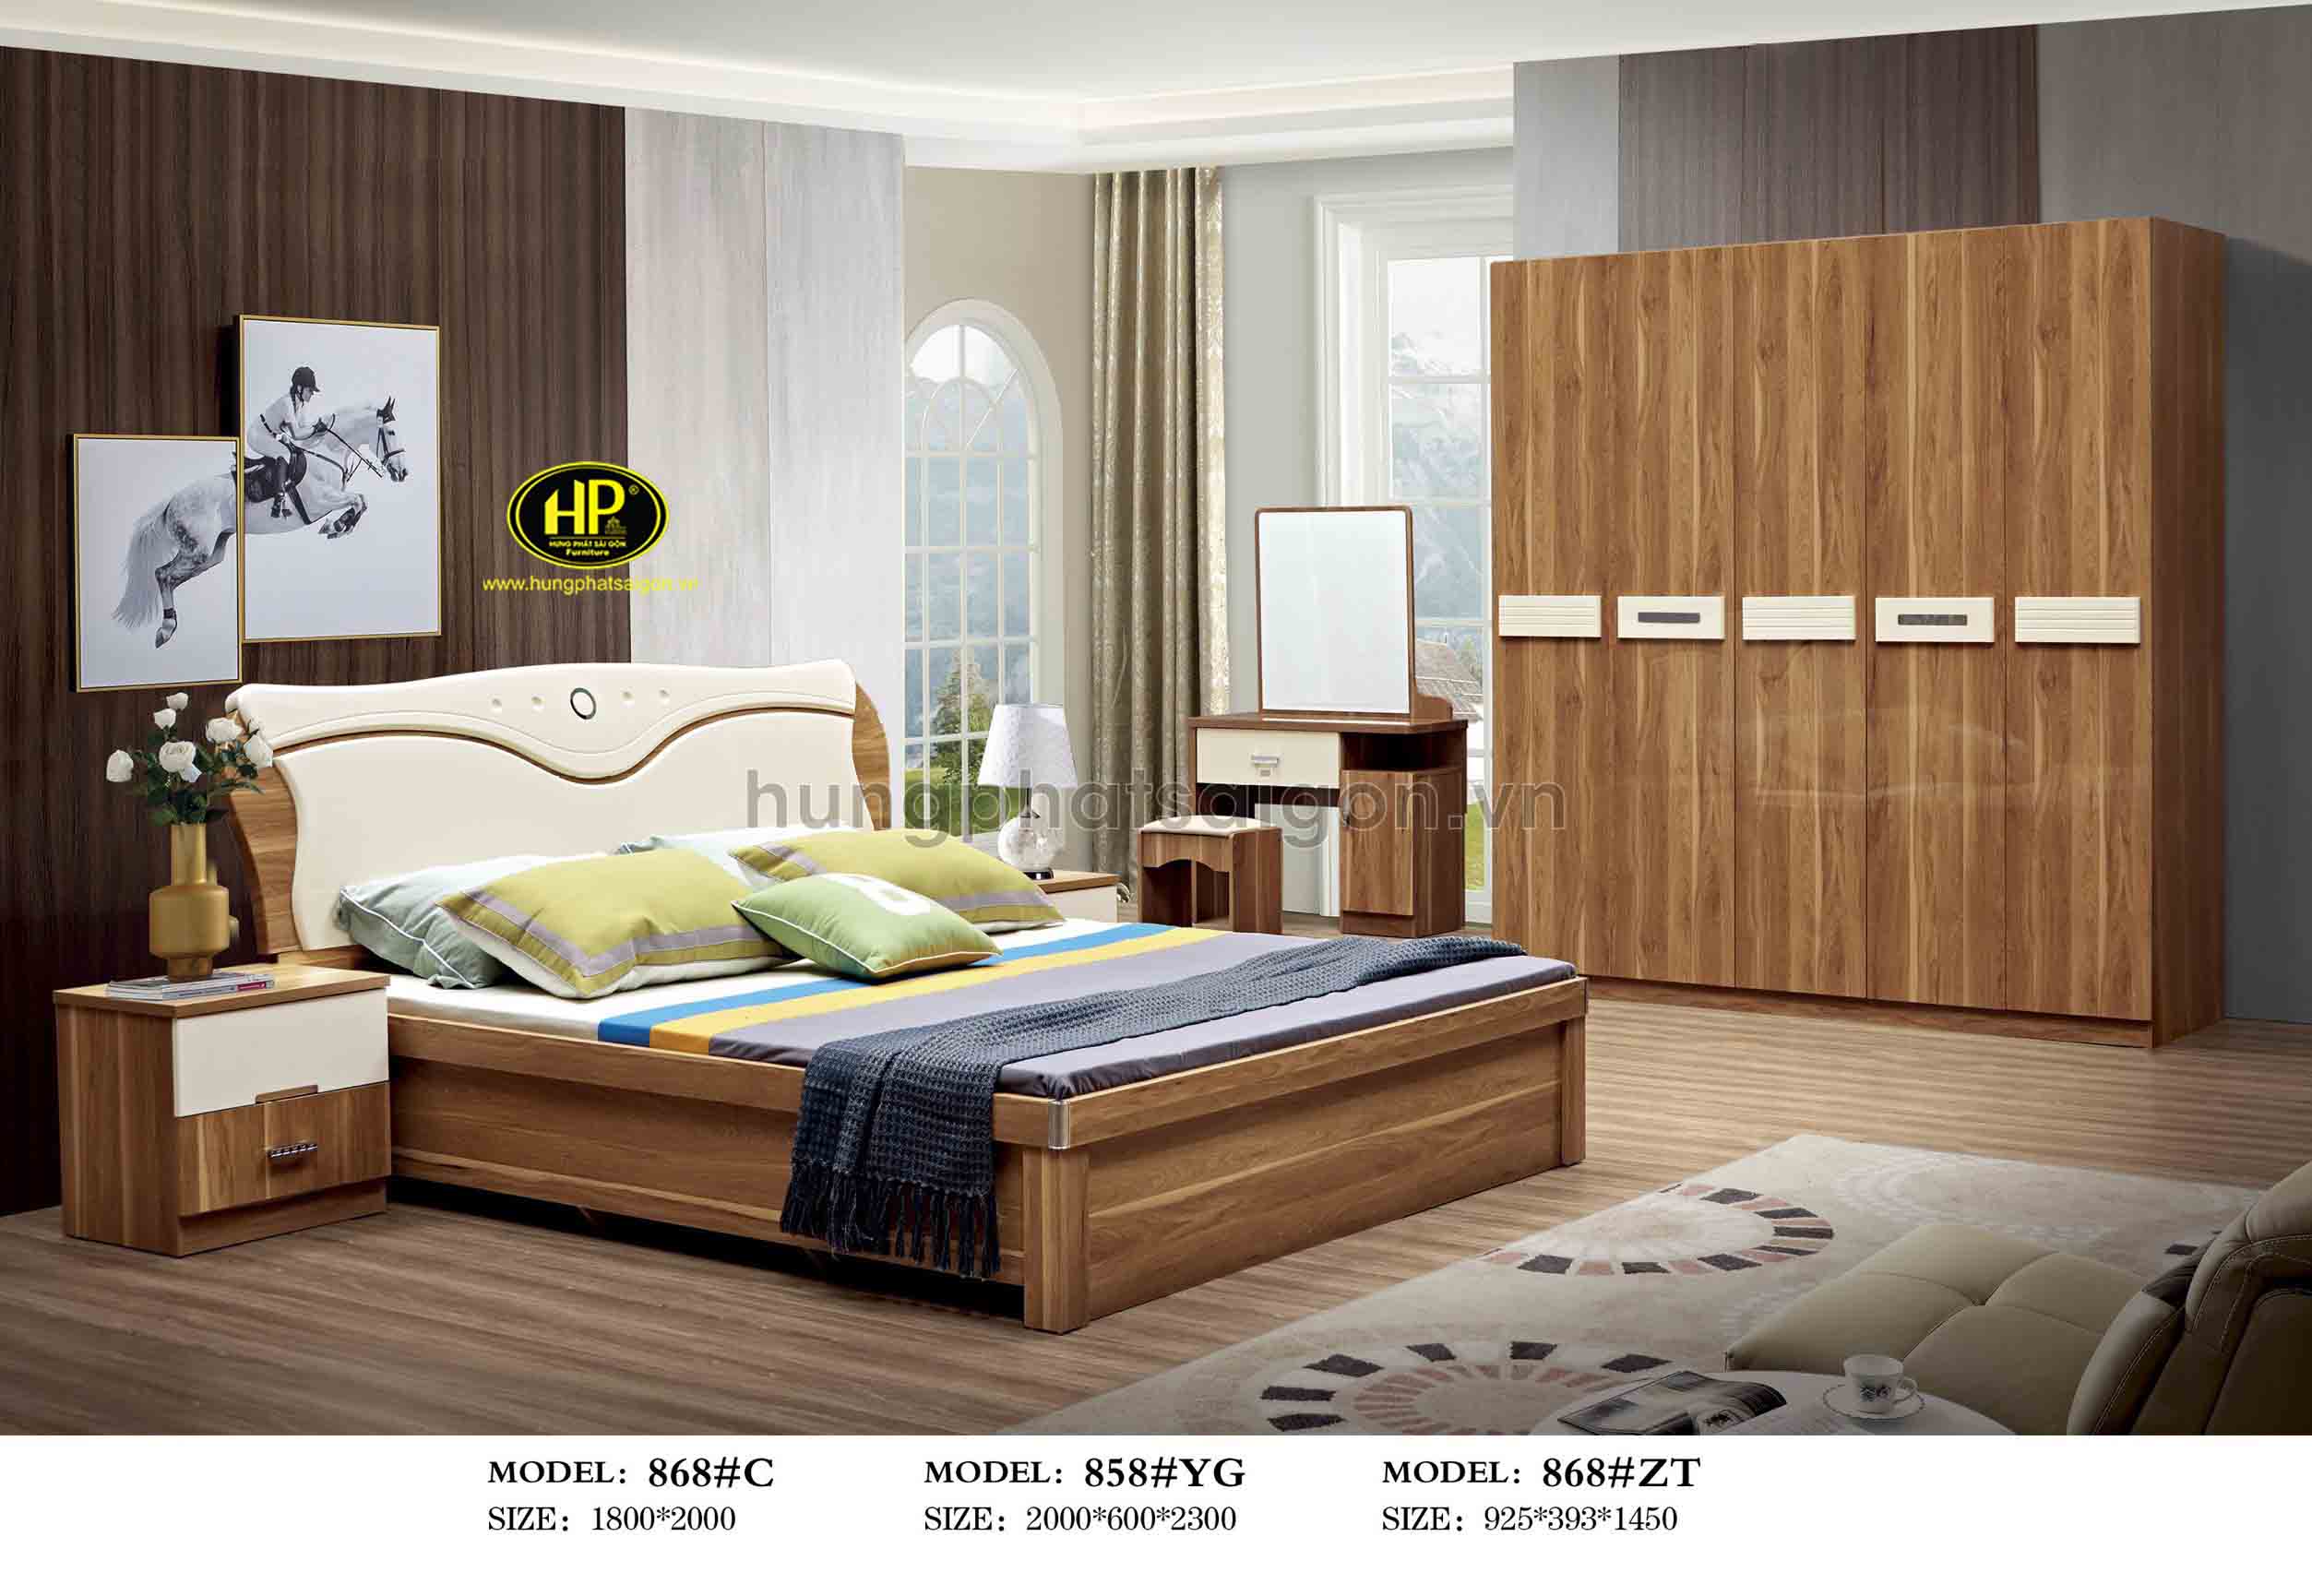 Trọn bộ giường tủ gỗ nhập khẩu TP-868